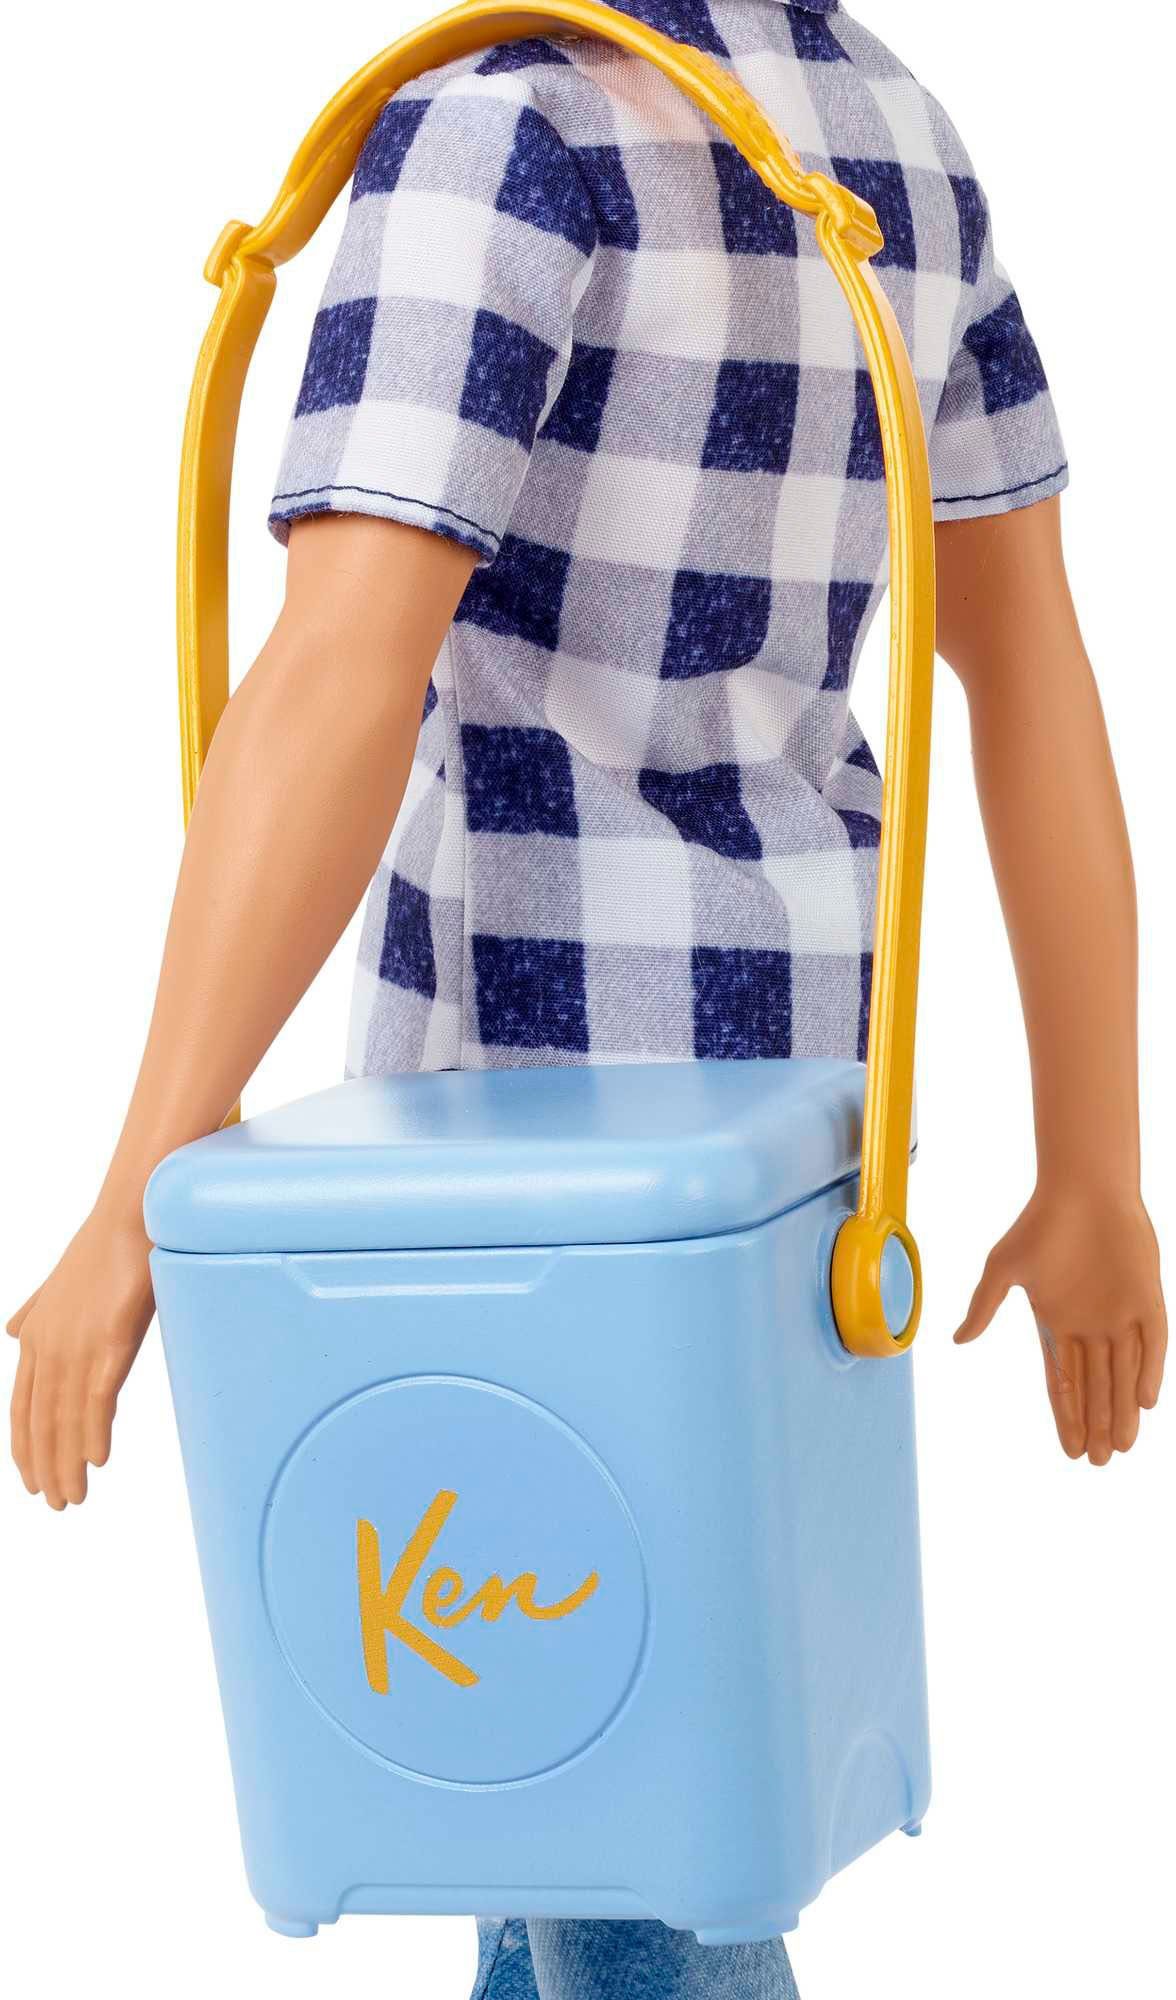 Barbie Anziehpuppe Abenteuer zu Ken zweit, (1-tlg)